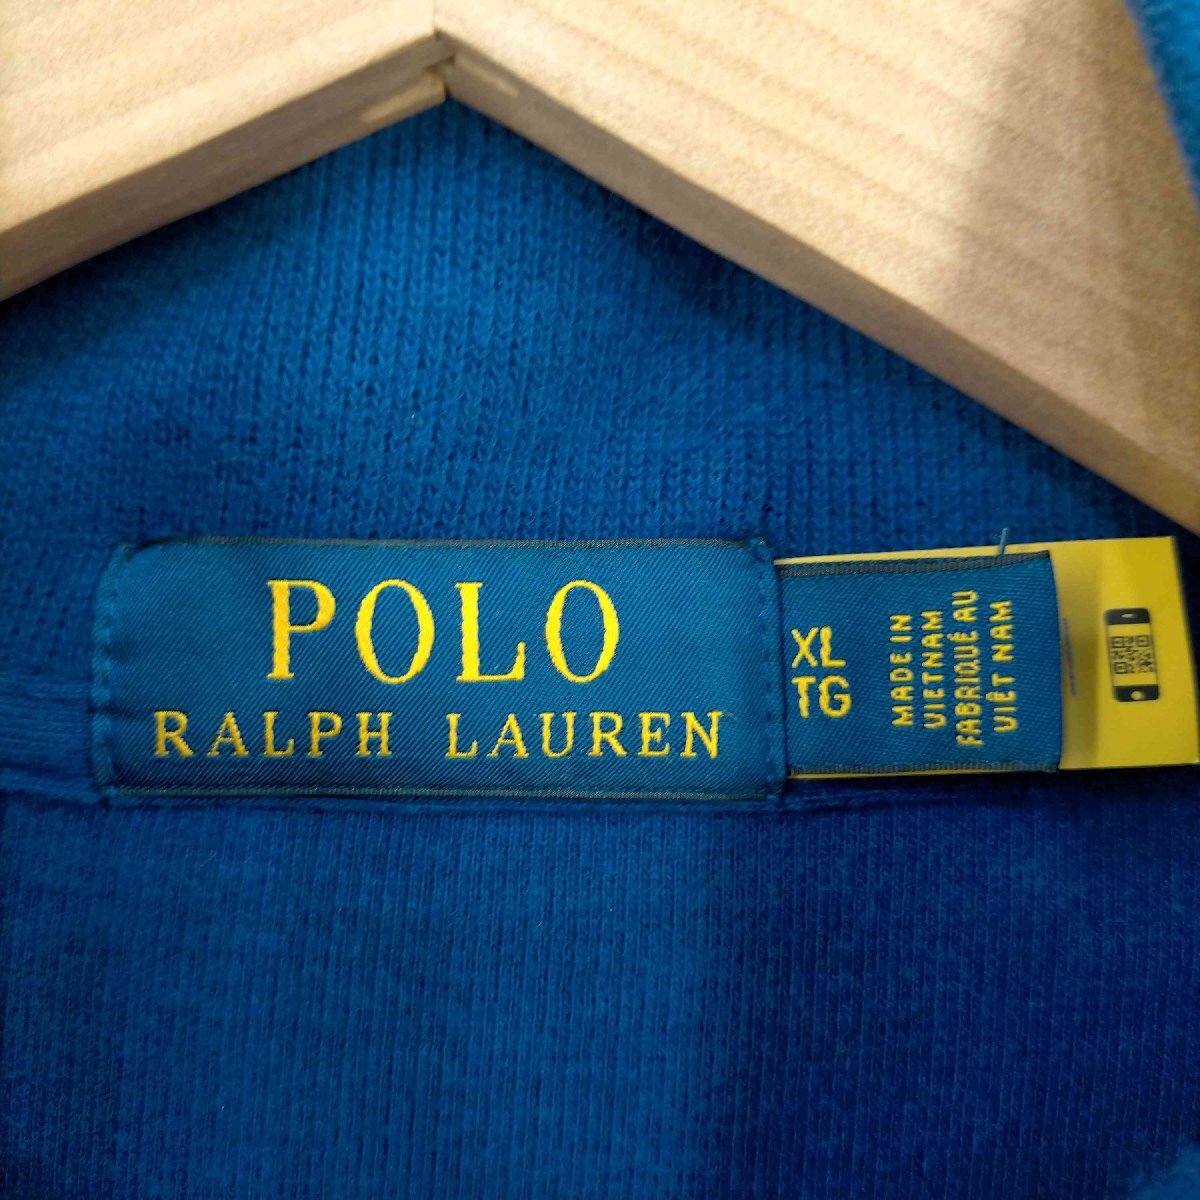 POLO RALPH LAUREN(ポロラルフローレン) ポニー刺繍 ハーフジップトップ メンズ impo 中古 古着 0545_画像6